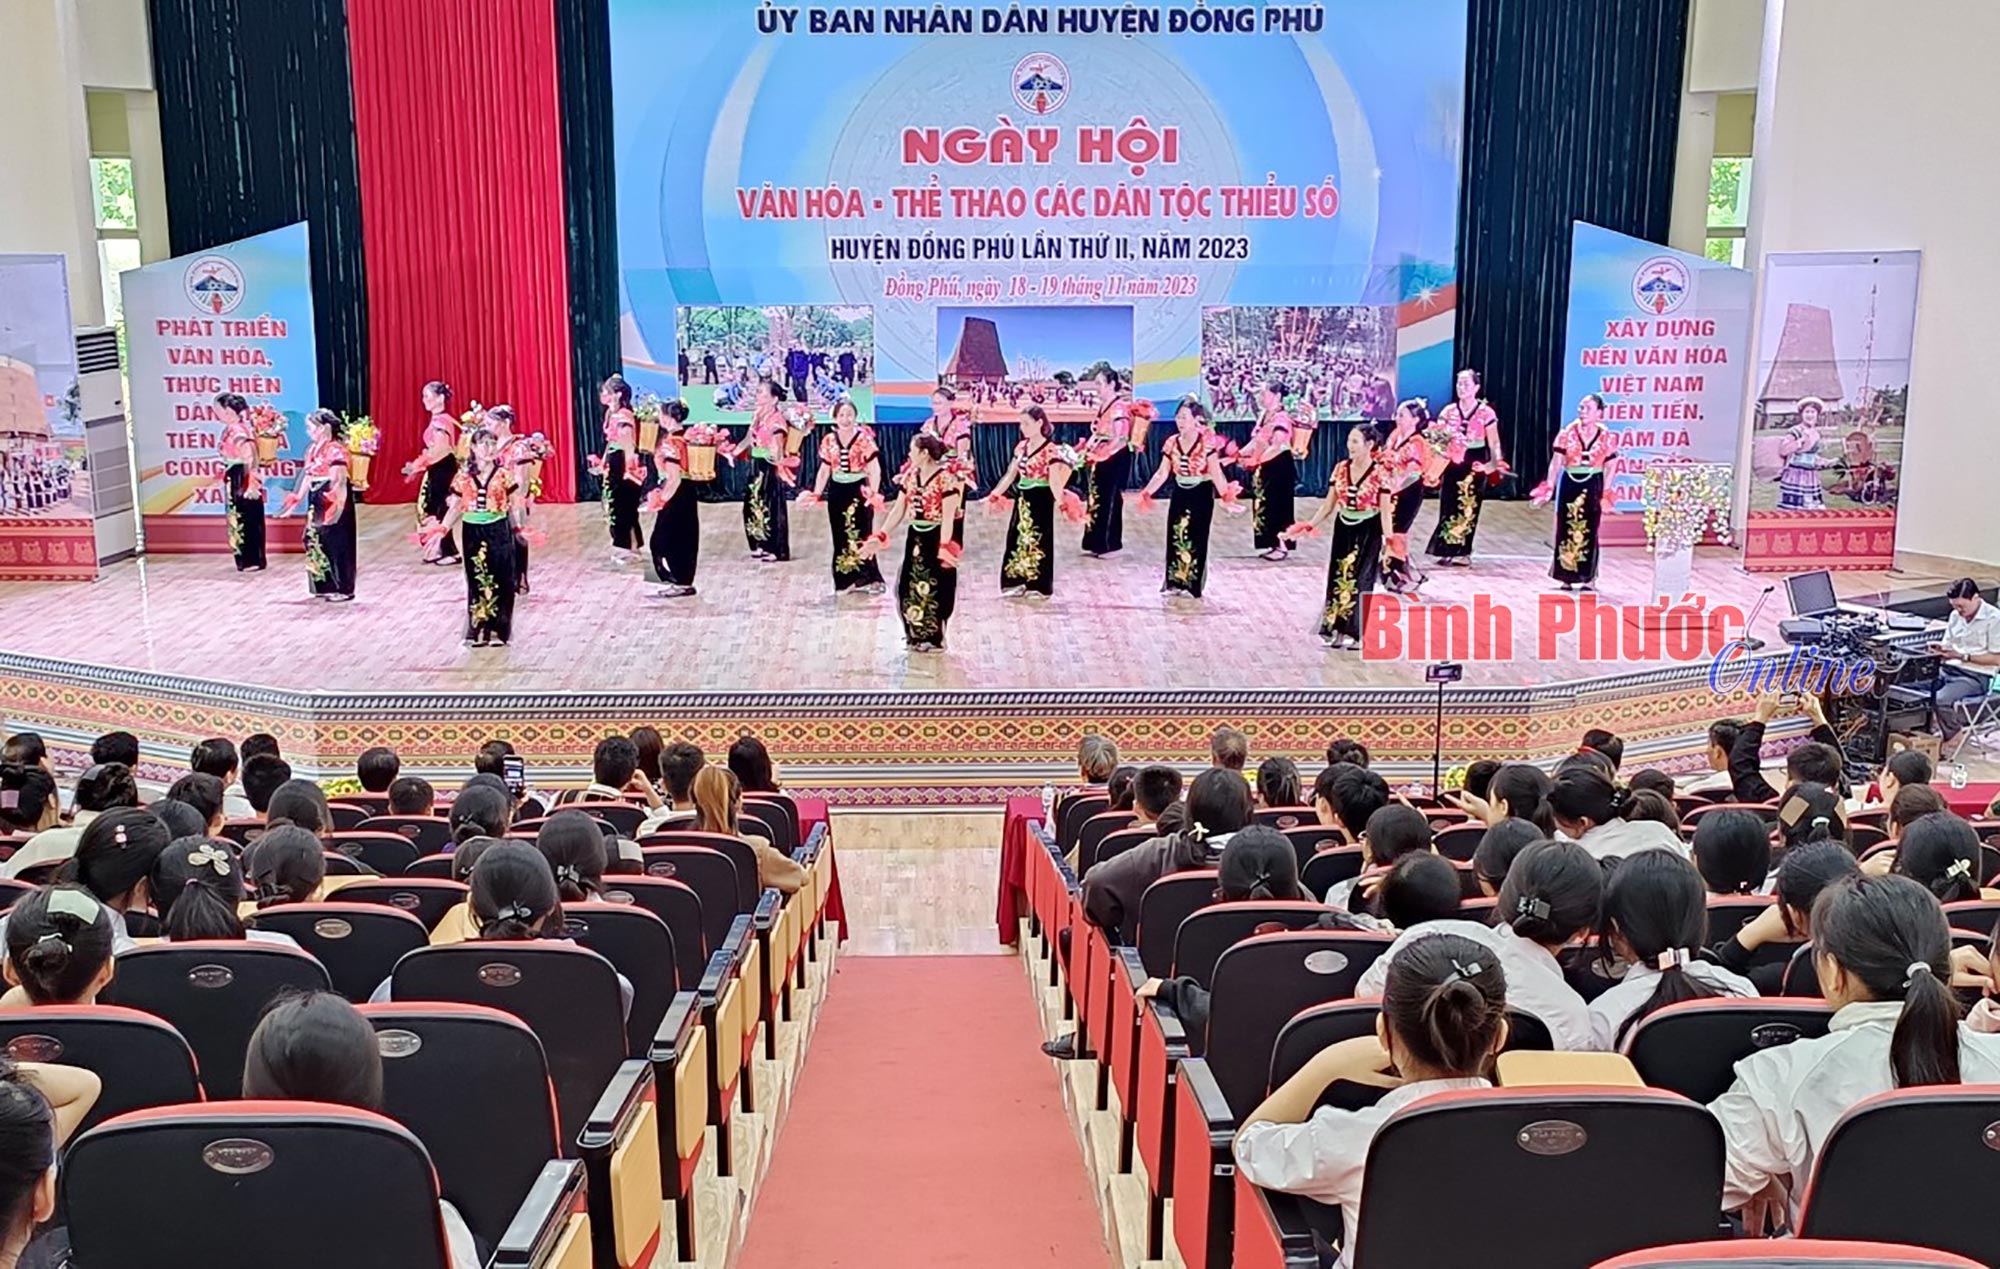 Đồng Phú: Khai mạc Liên hoan văn hóa - thể thao các dân tộc thiểu số lần thứ II năm 2023